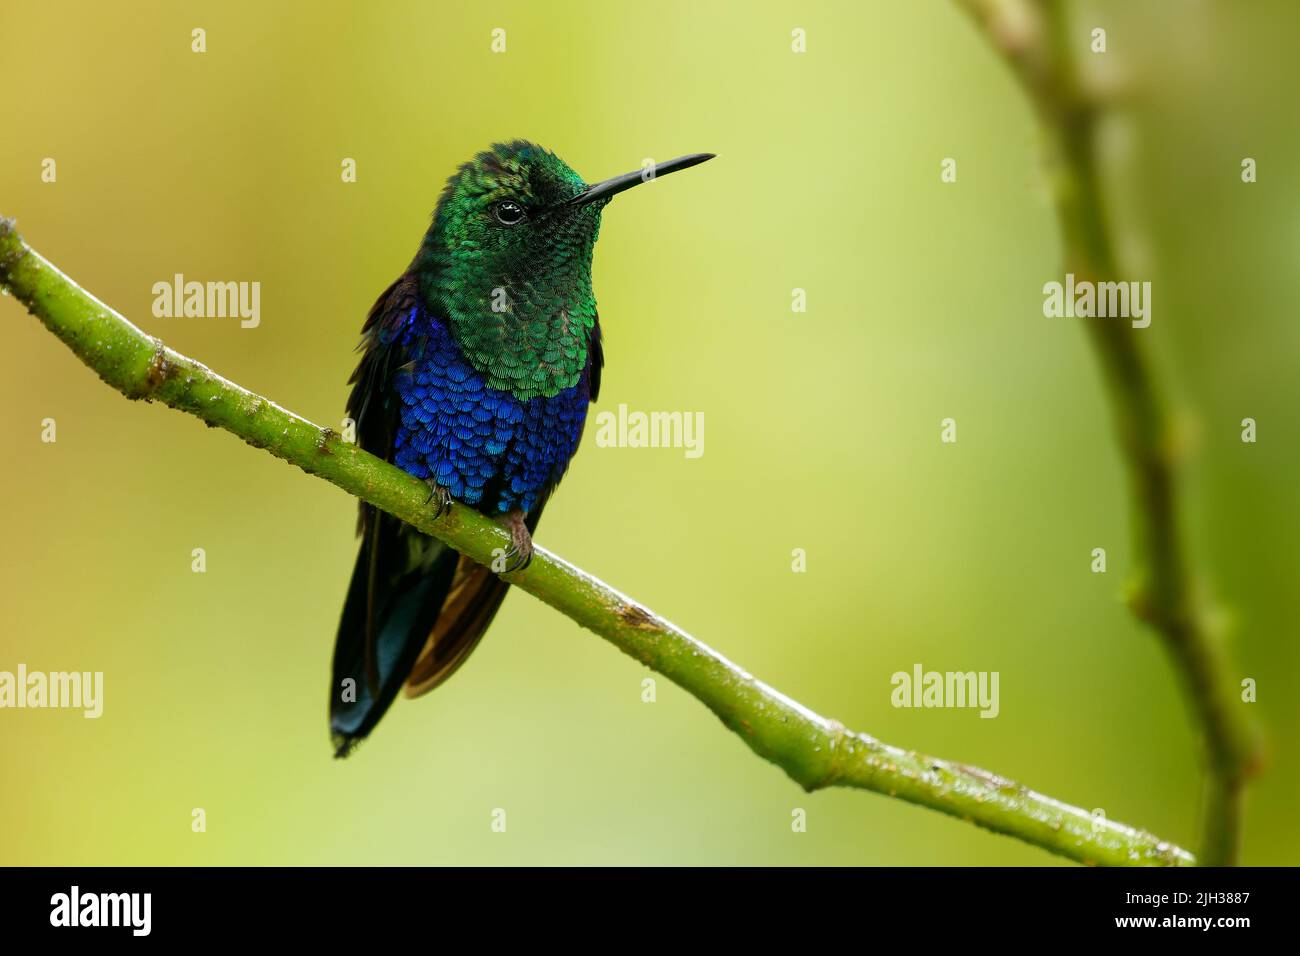 Ninfa coronada - Thalurania colombica ave verde y azul de la familia Trochilidae, encontrada en Belice y Guatemala hasta Perú, azul y verde Foto de stock